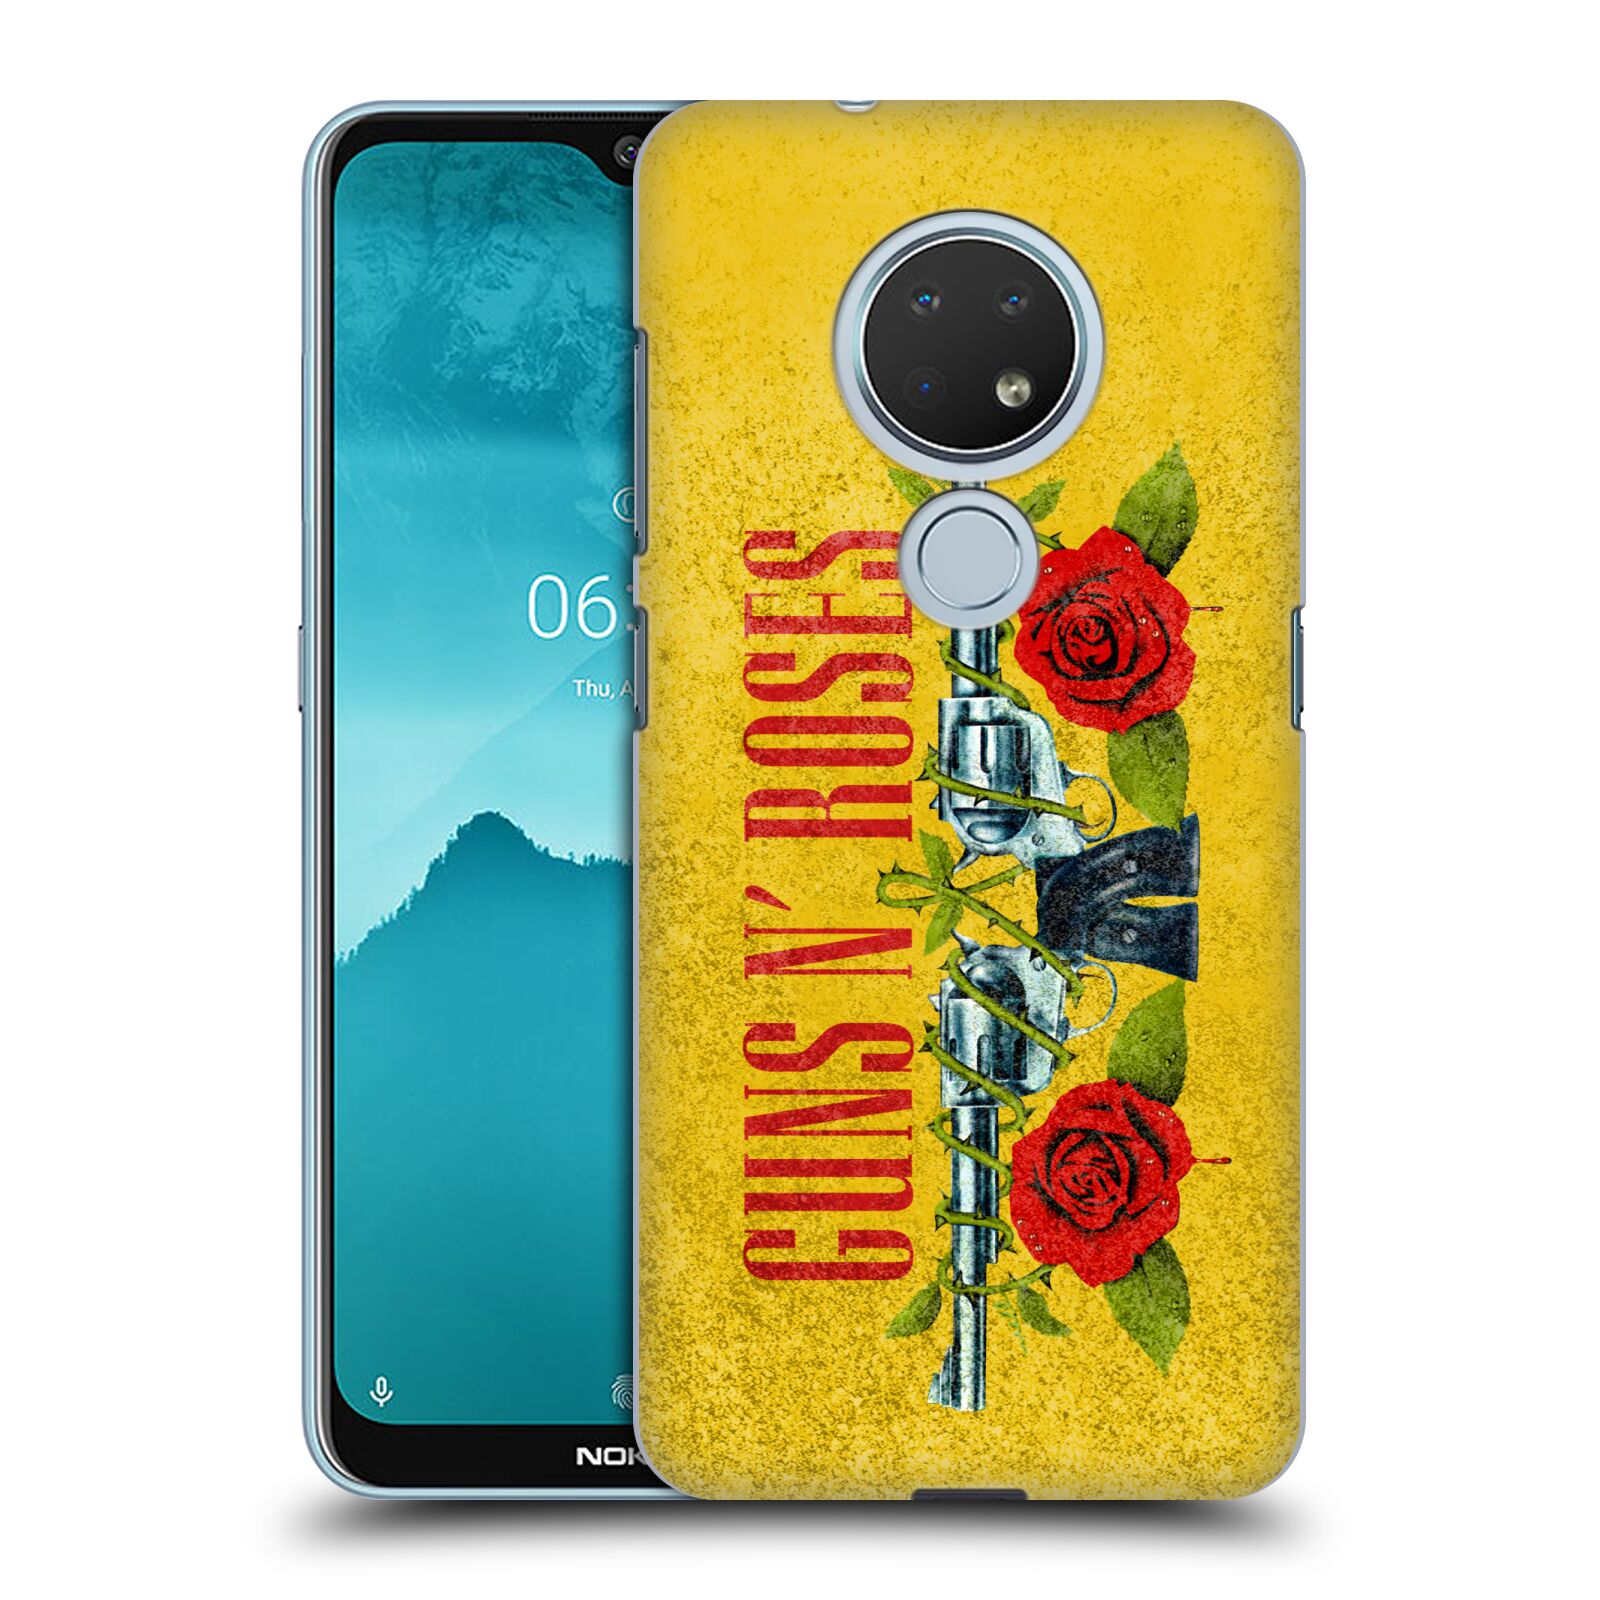 Pouzdro na mobil Nokia 6.2 - HEAD CASE - hudební skupina Guns N Roses pistole a růže žluté pozadí